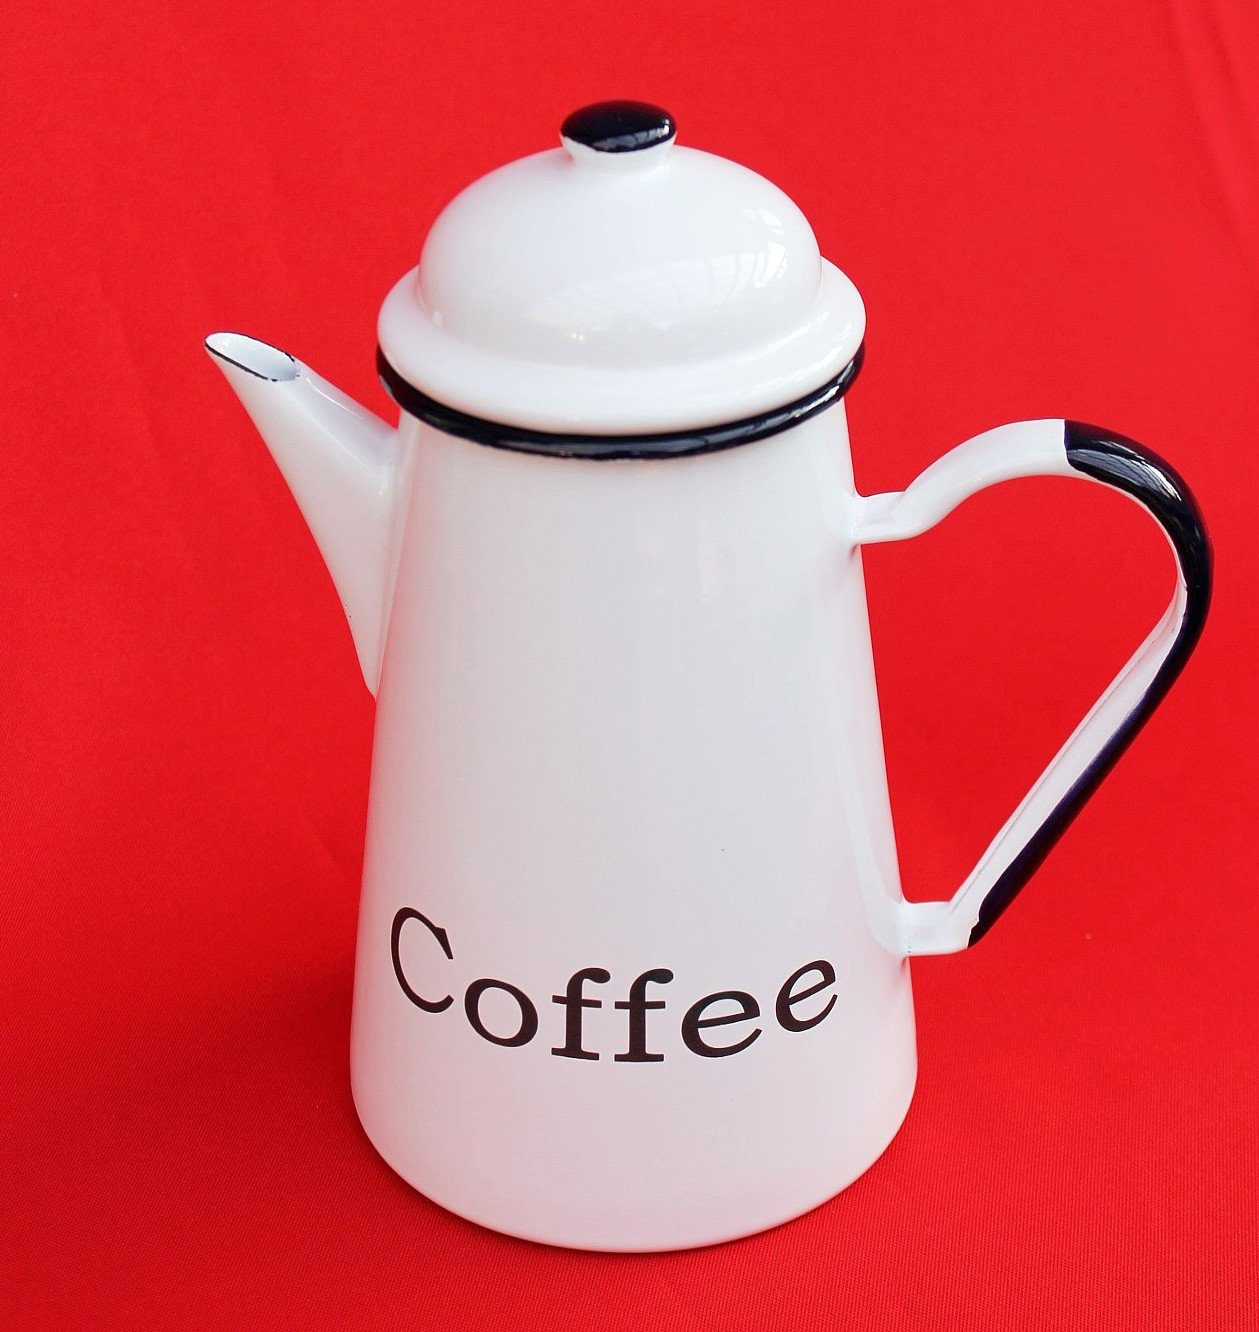 Nostalgie L DanDiBo Kaffeekanne Emaille Teekanne emailliert cm 578TB Kanne Coffee Wasserkanne 1,0 Kaffeekanne 22